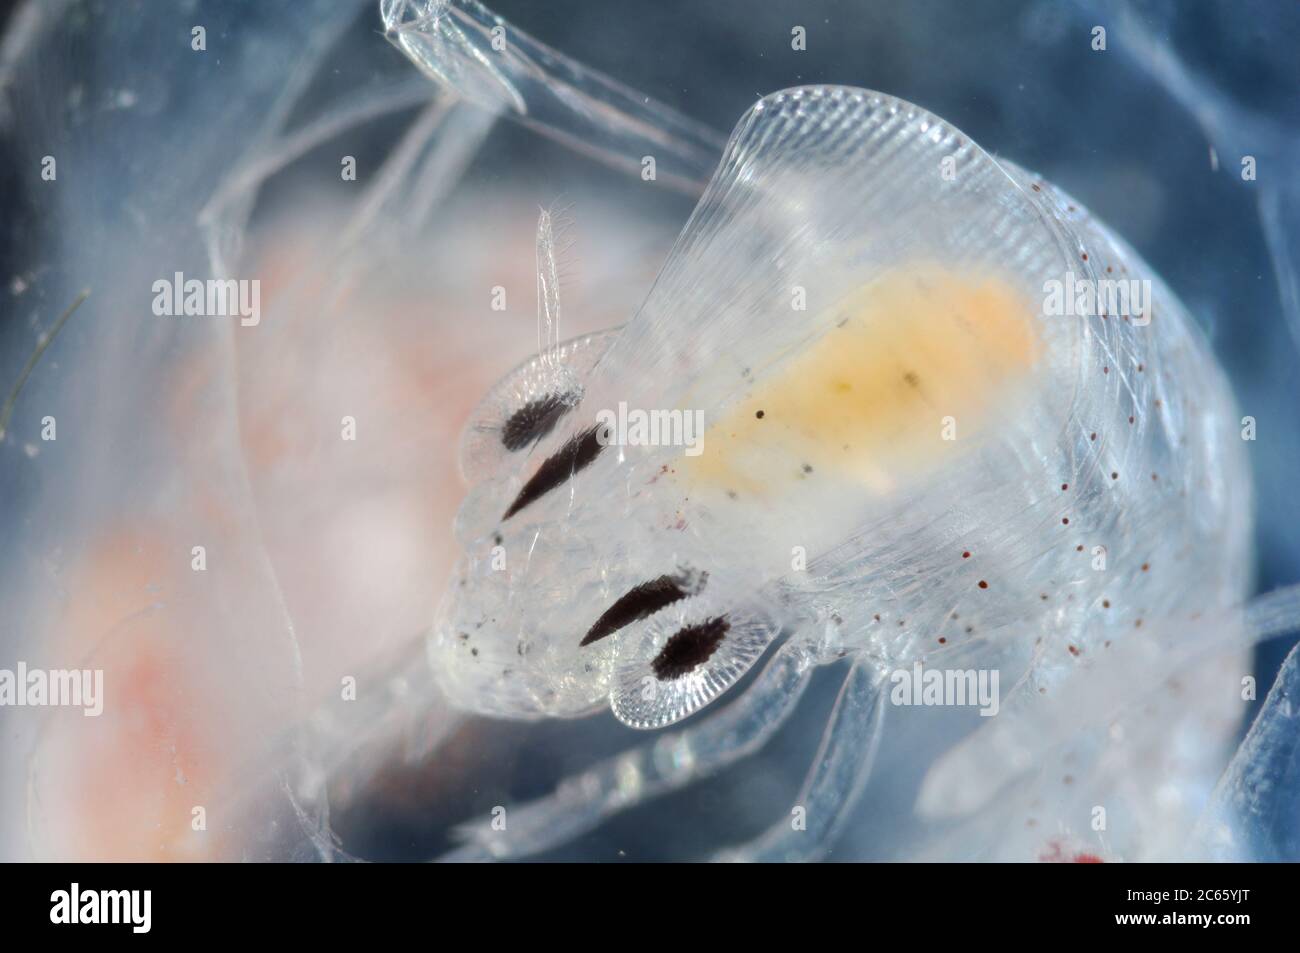 Tiefsee-Plankton, die Augen des erwachsenen Phronima sind ein weiteres Merkmal des Staunens in einem Tier, das bereits mit außergewöhnlichen Gewohnheiten und Anpassungen behaftet ist, Phronima sp. Stockfoto